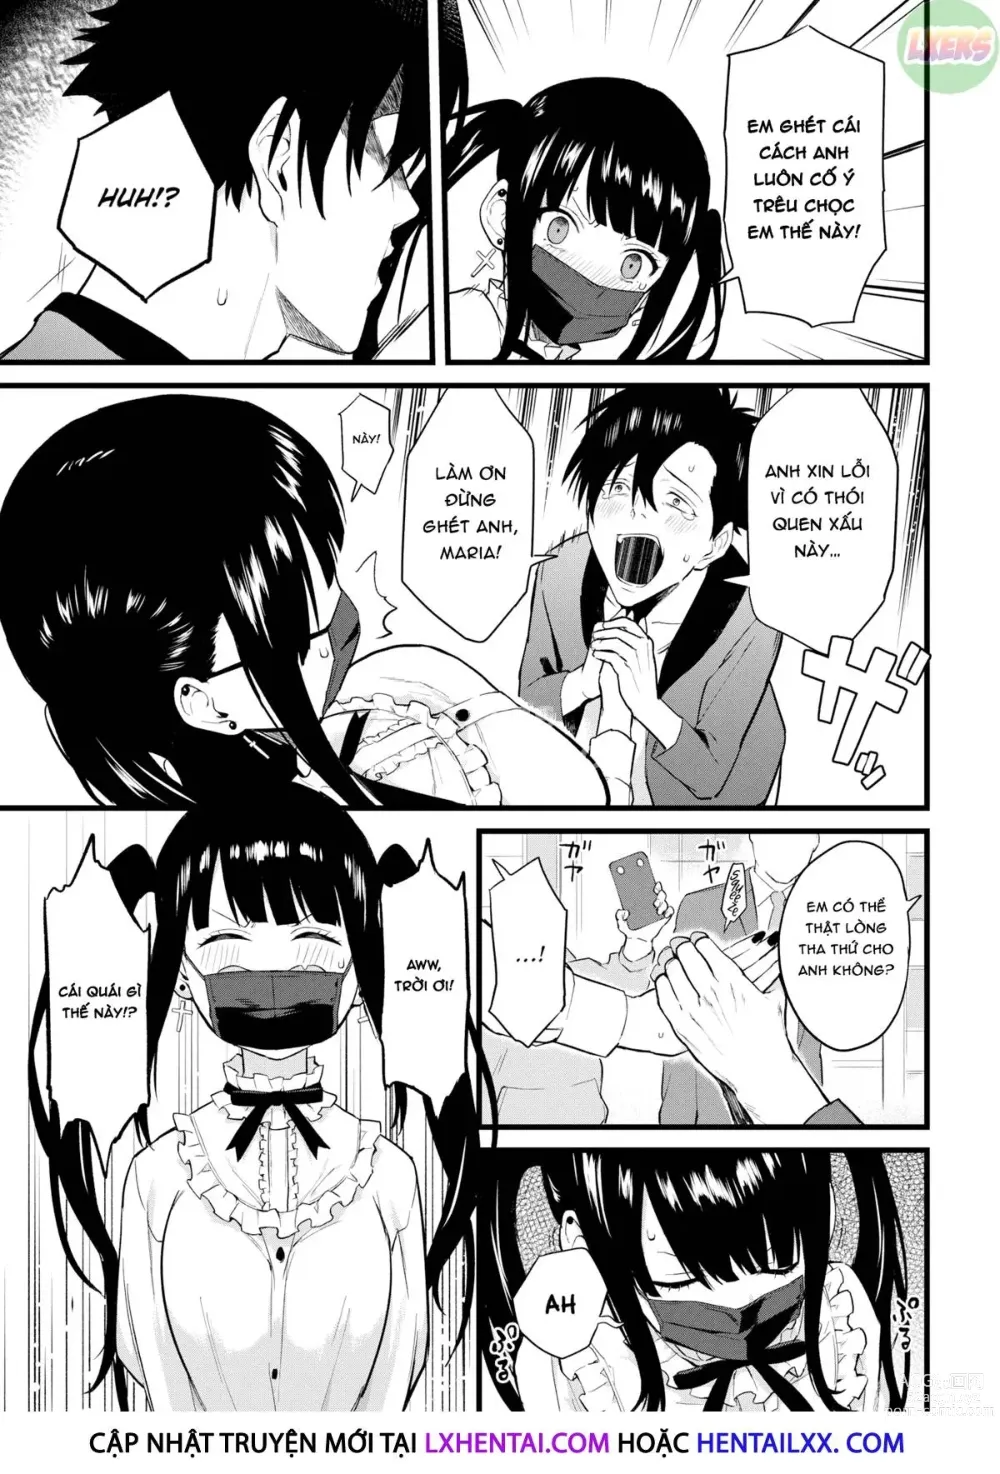 Page 5 of doujinshi Điều em yêu ở anh